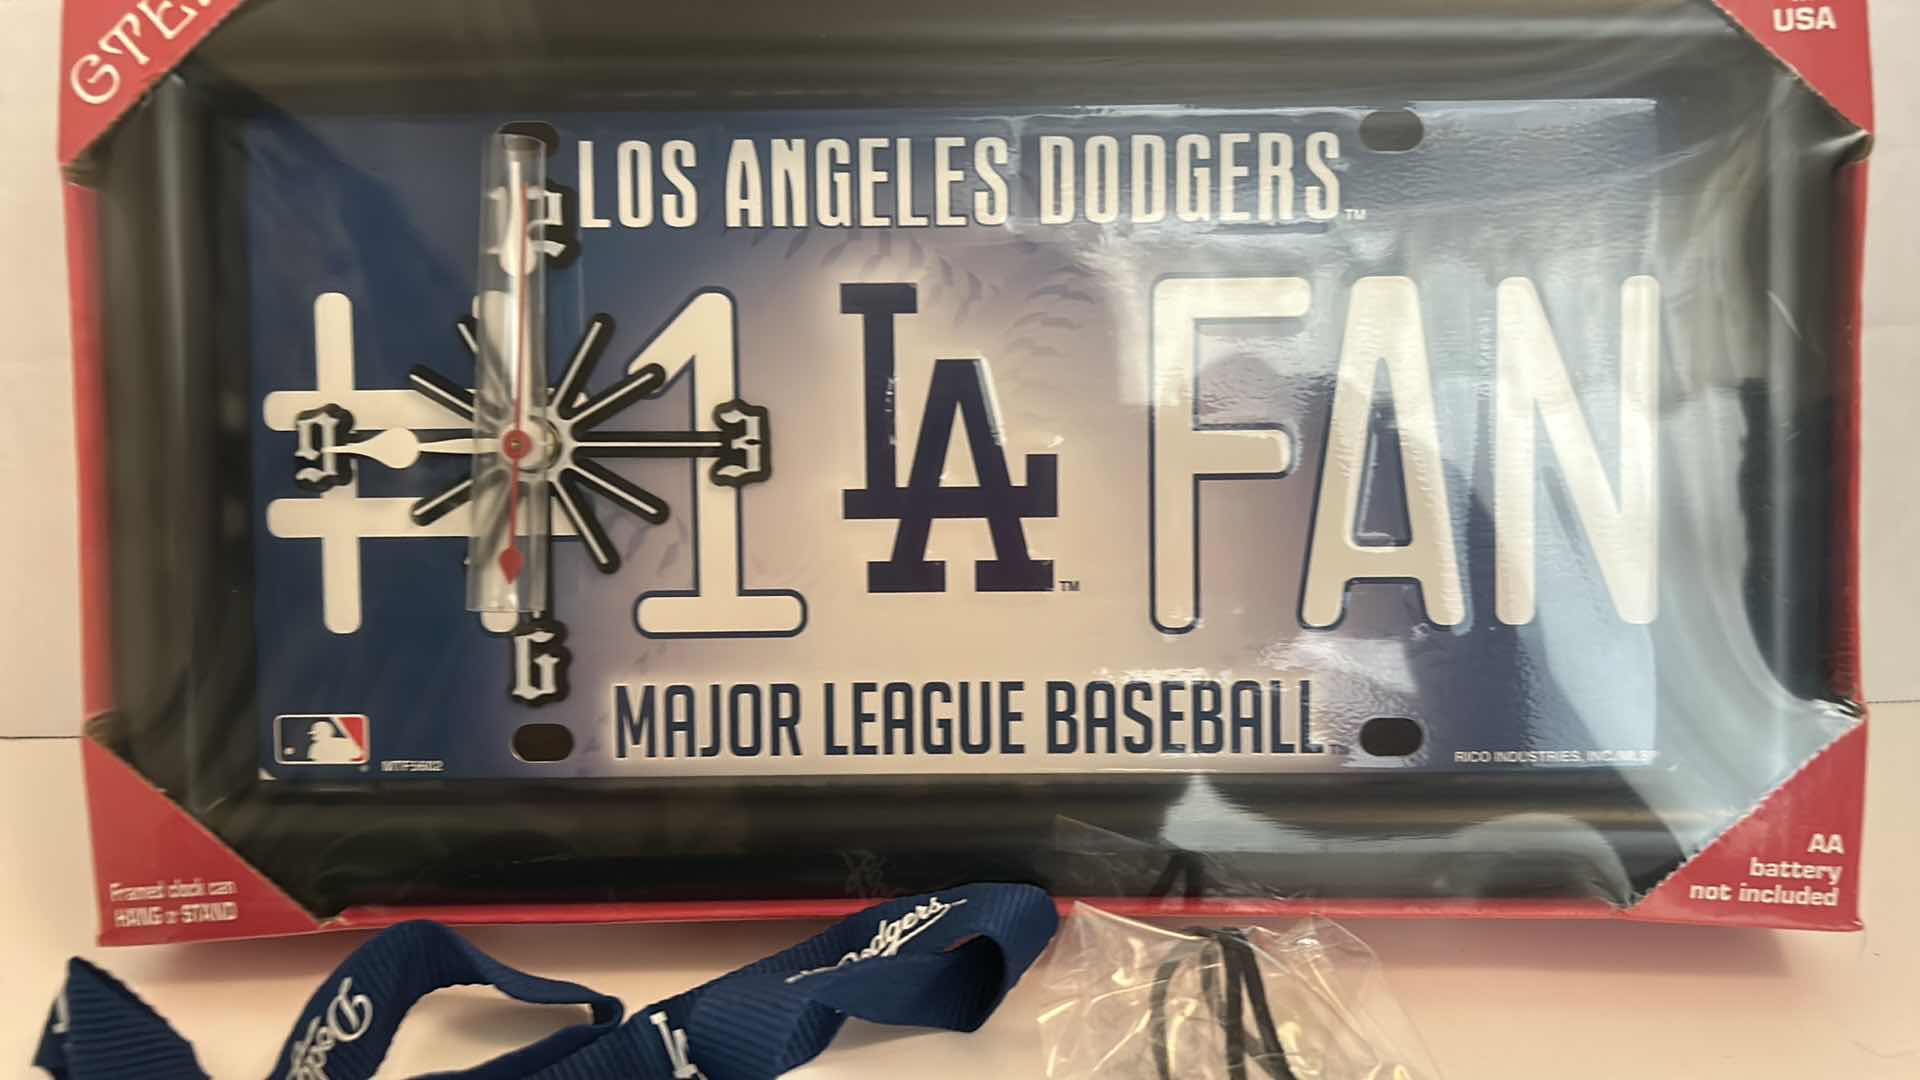 Photo 2 of MLB BASEBALL FAN GEAR - LOS ANGELES DODGERS 